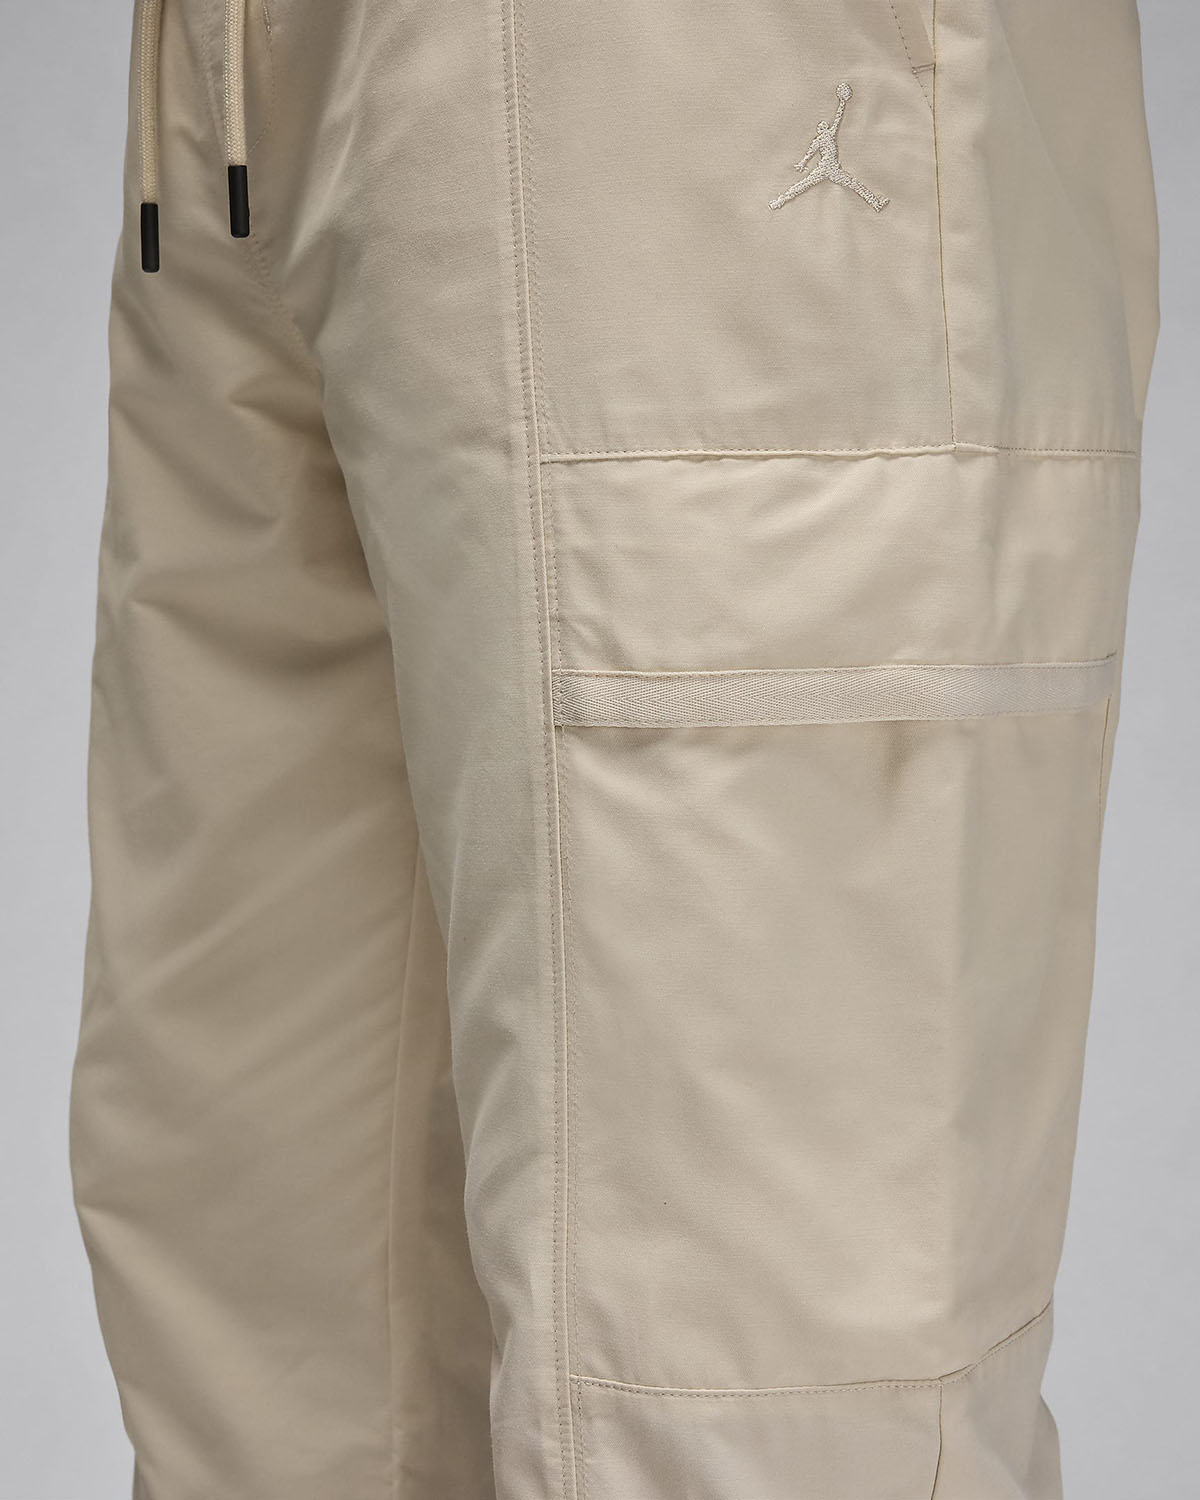 Jordan Essentials Woven Pants Air Jordan 1 Acclimate Releasing in White and Grey 4